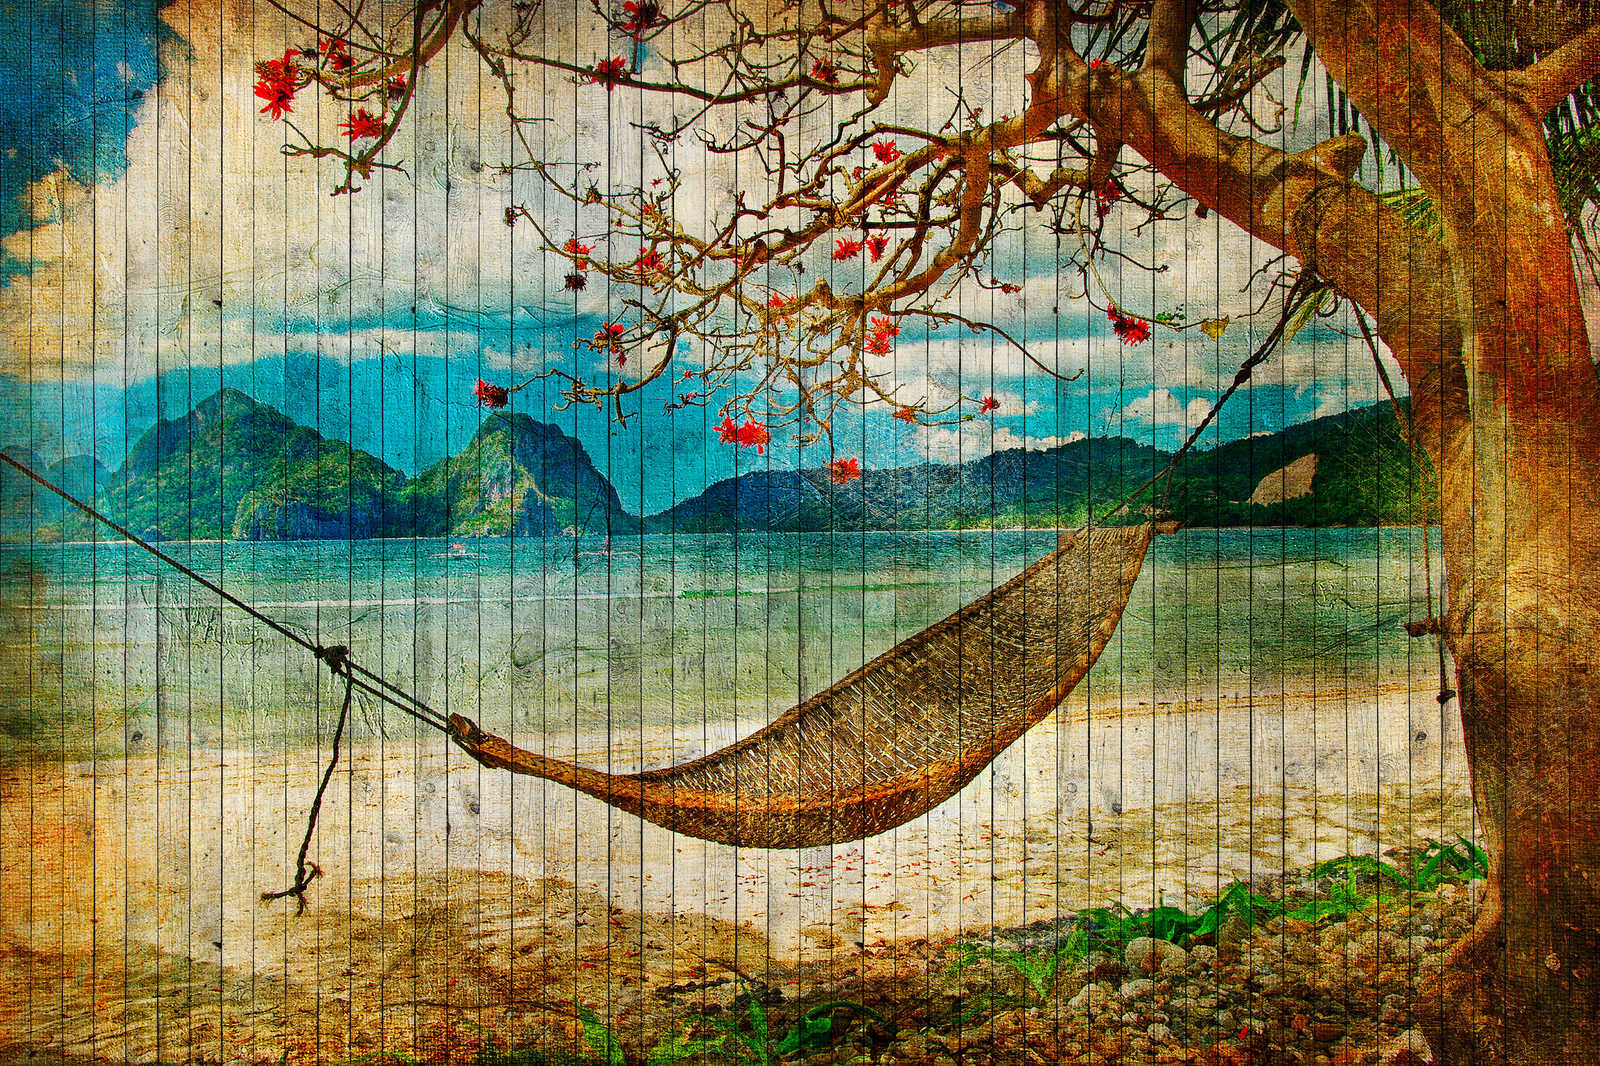             Tahiti 2 - Quadro su tela in legno ottico con amaca e spiaggia dei mari del sud - 0,90 m x 0,60 m
        